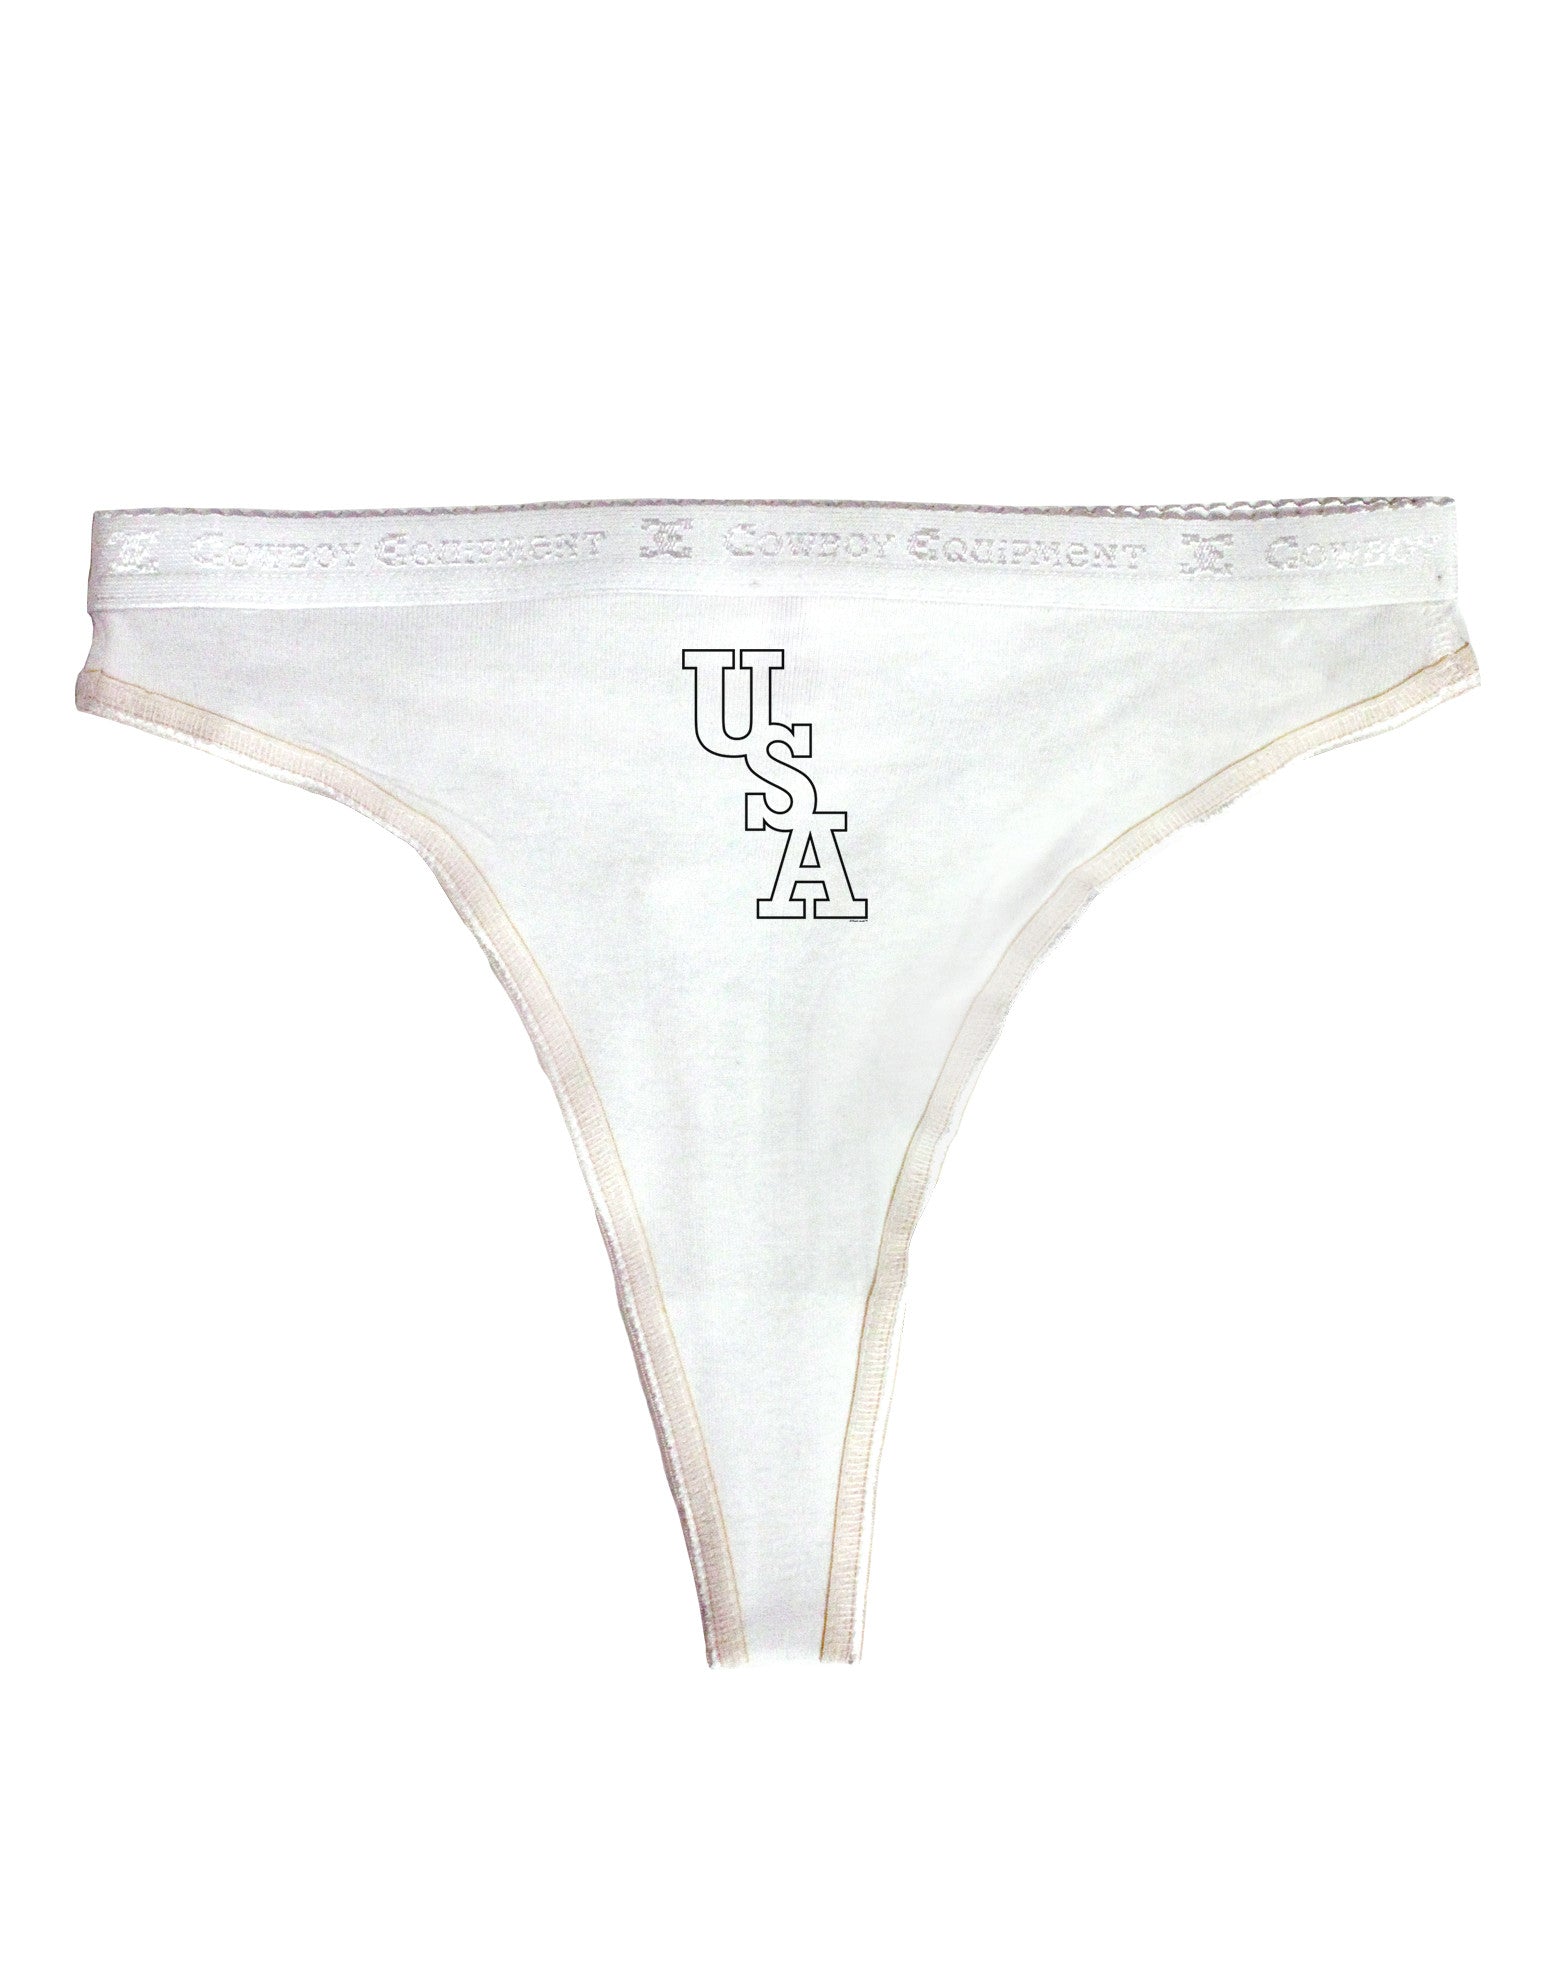 Slippery When Wet Womens Thong Underwear - Davson Sales